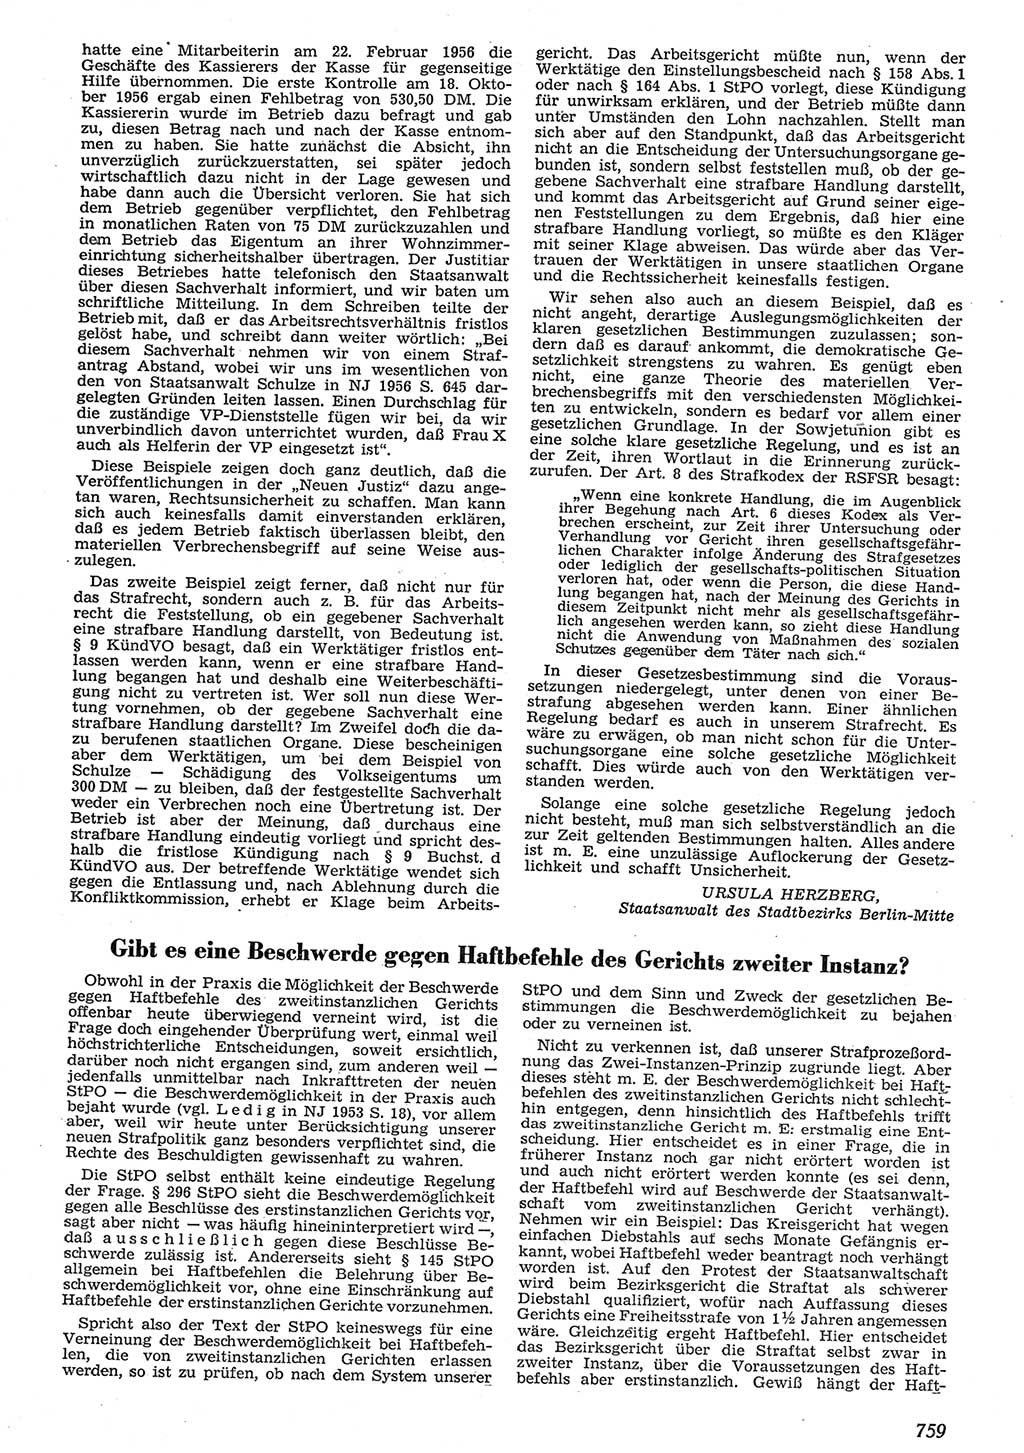 Neue Justiz (NJ), Zeitschrift für Recht und Rechtswissenschaft [Deutsche Demokratische Republik (DDR)], 10. Jahrgang 1956, Seite 759 (NJ DDR 1956, S. 759)